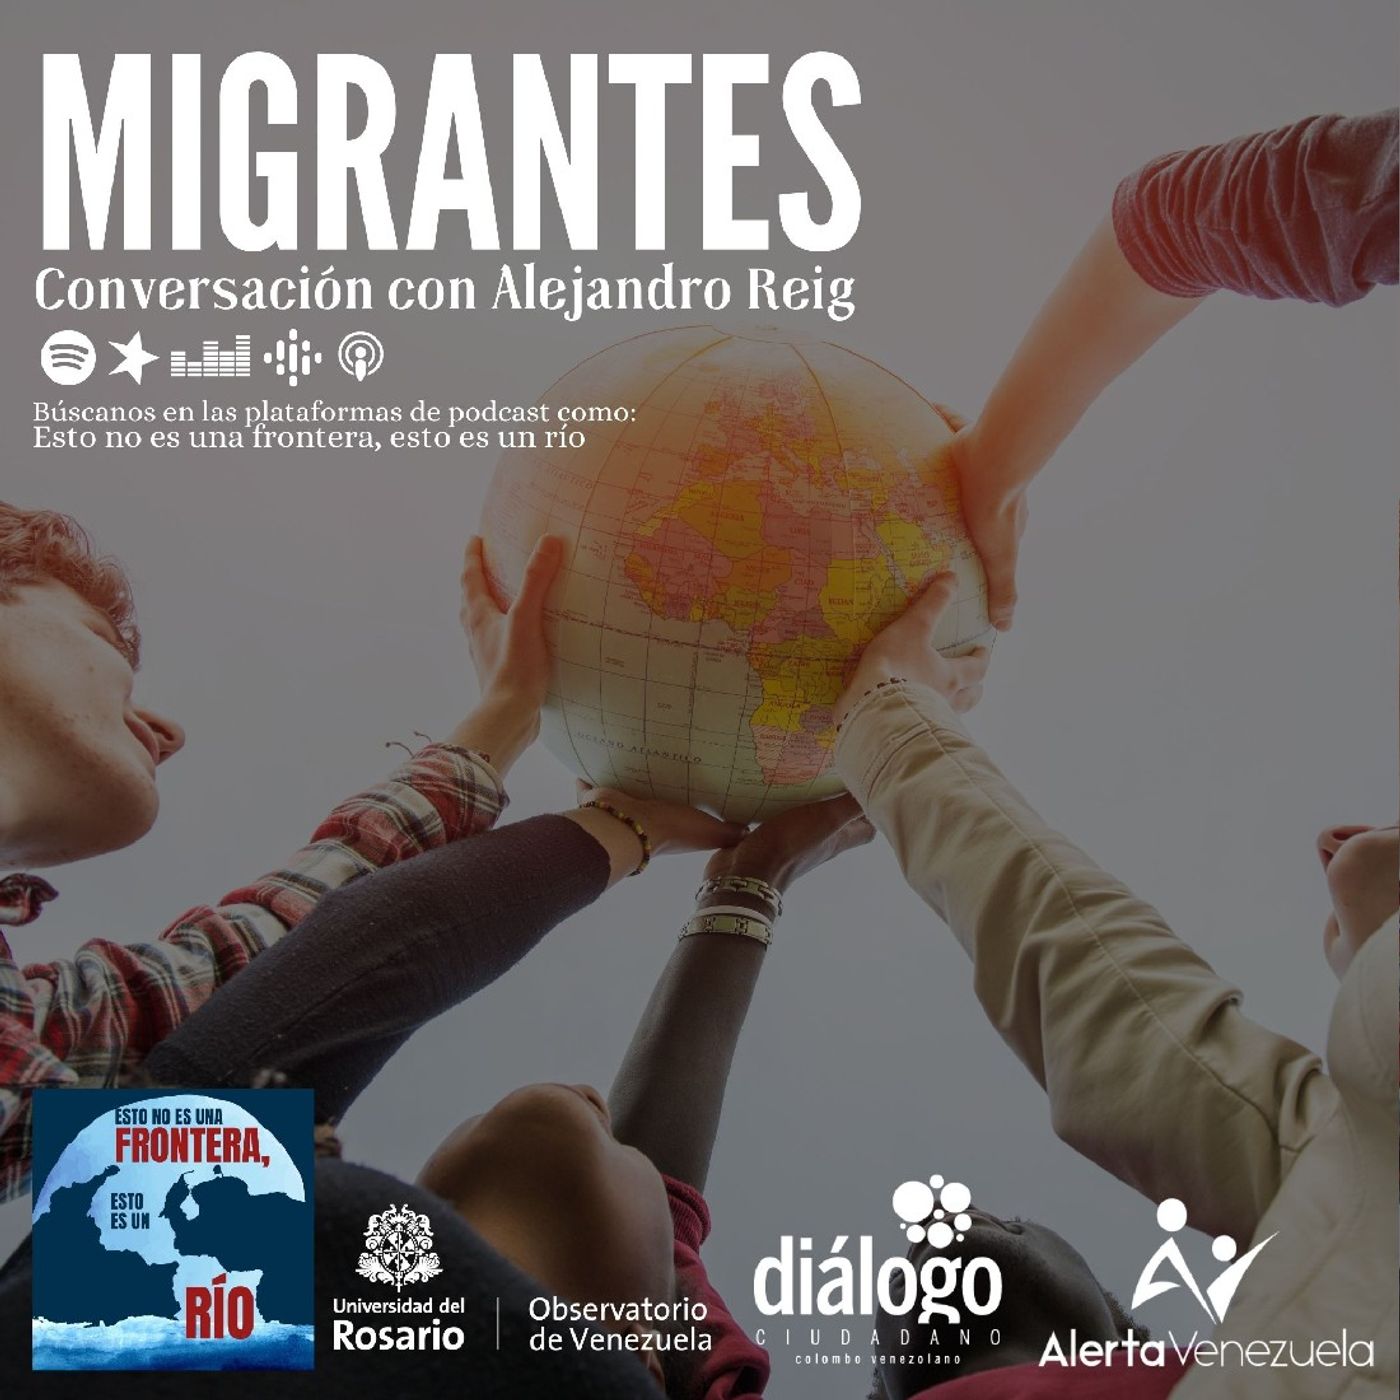 Migrantes, conversación con Alejandro Reig